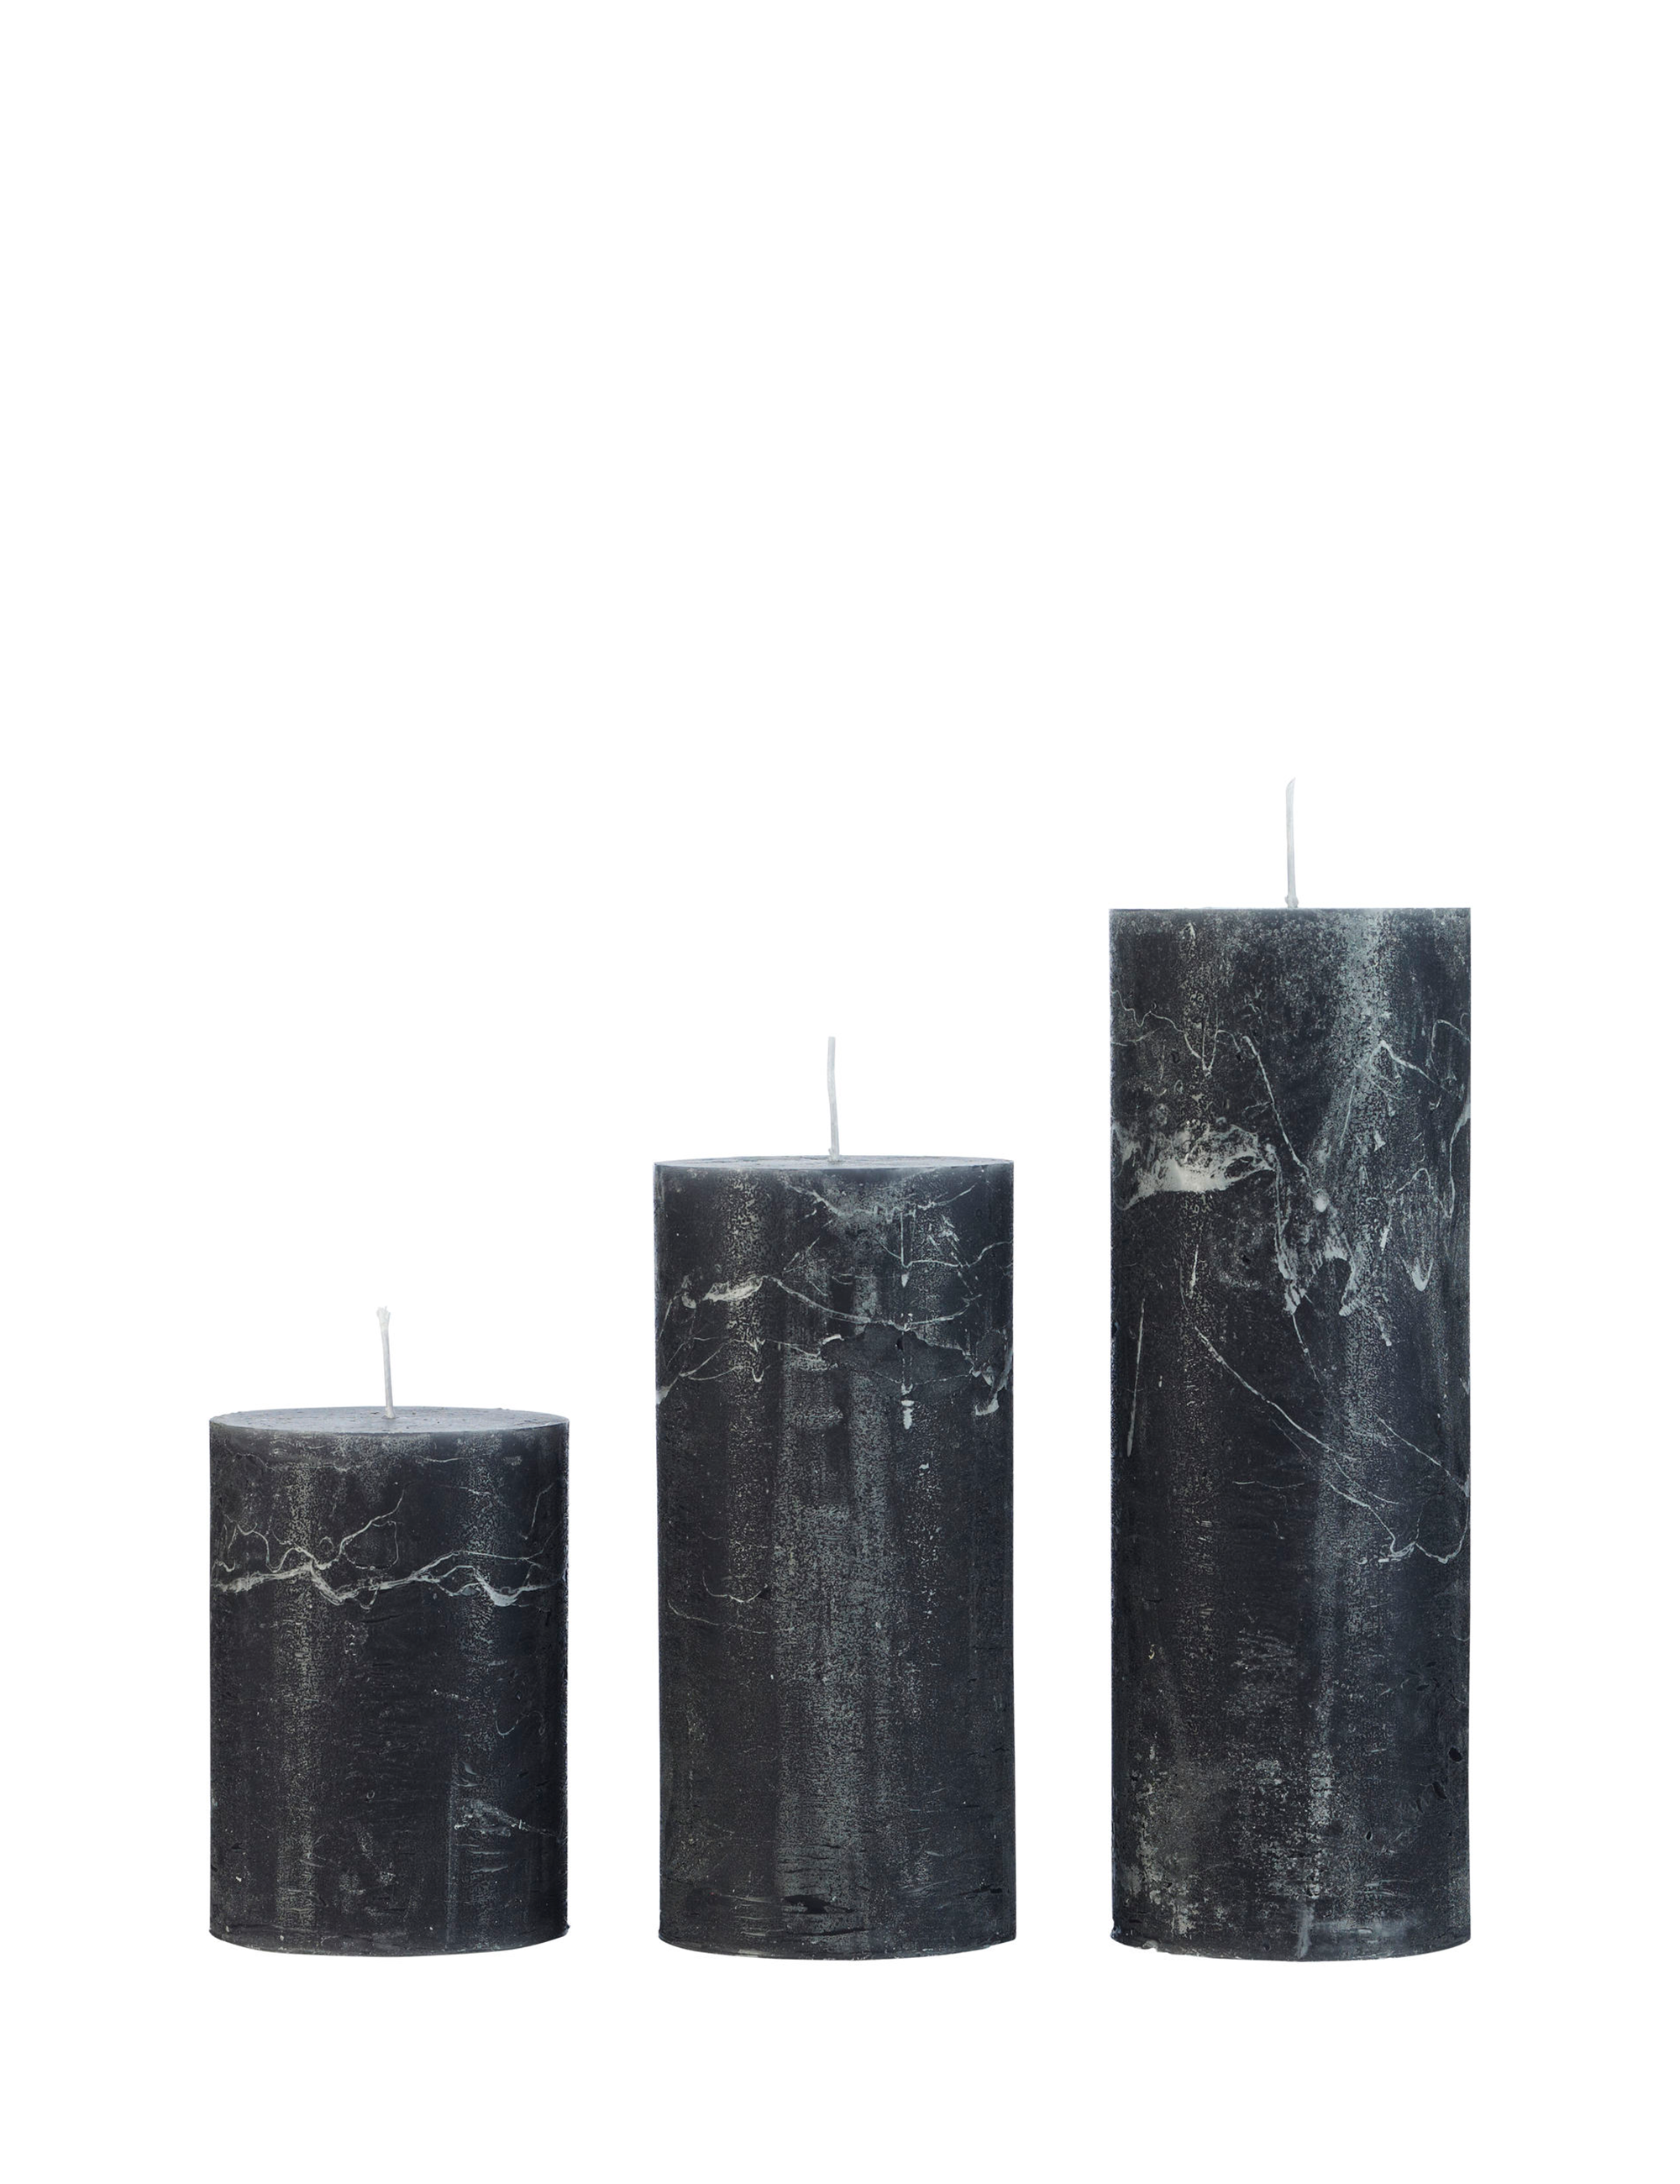 Rustic candle bloklys, diameter 7 cm - ANTRACITE • Cozy living